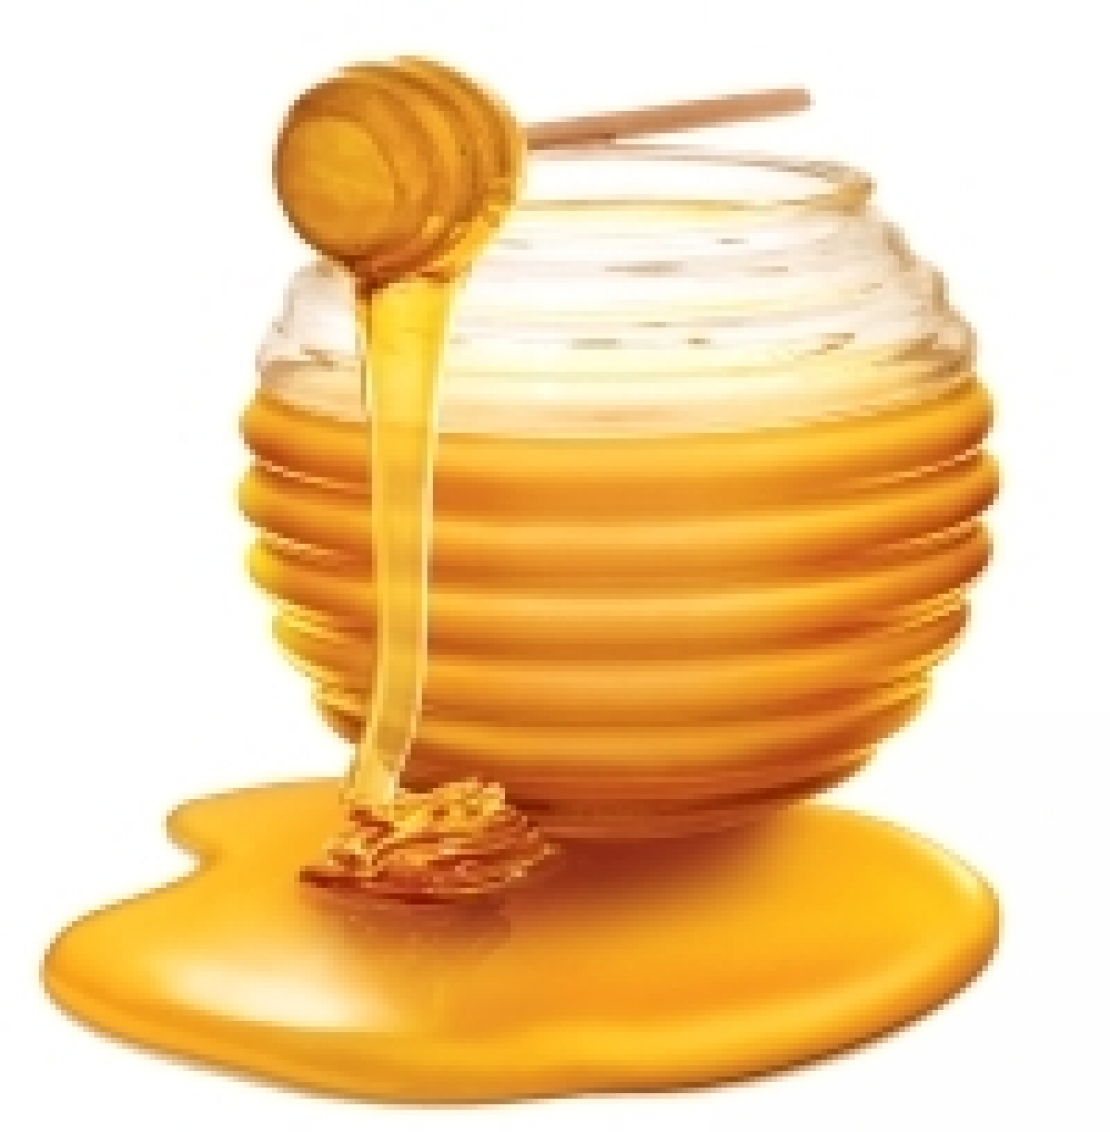 Il miele non va solo mangiato, va degustato